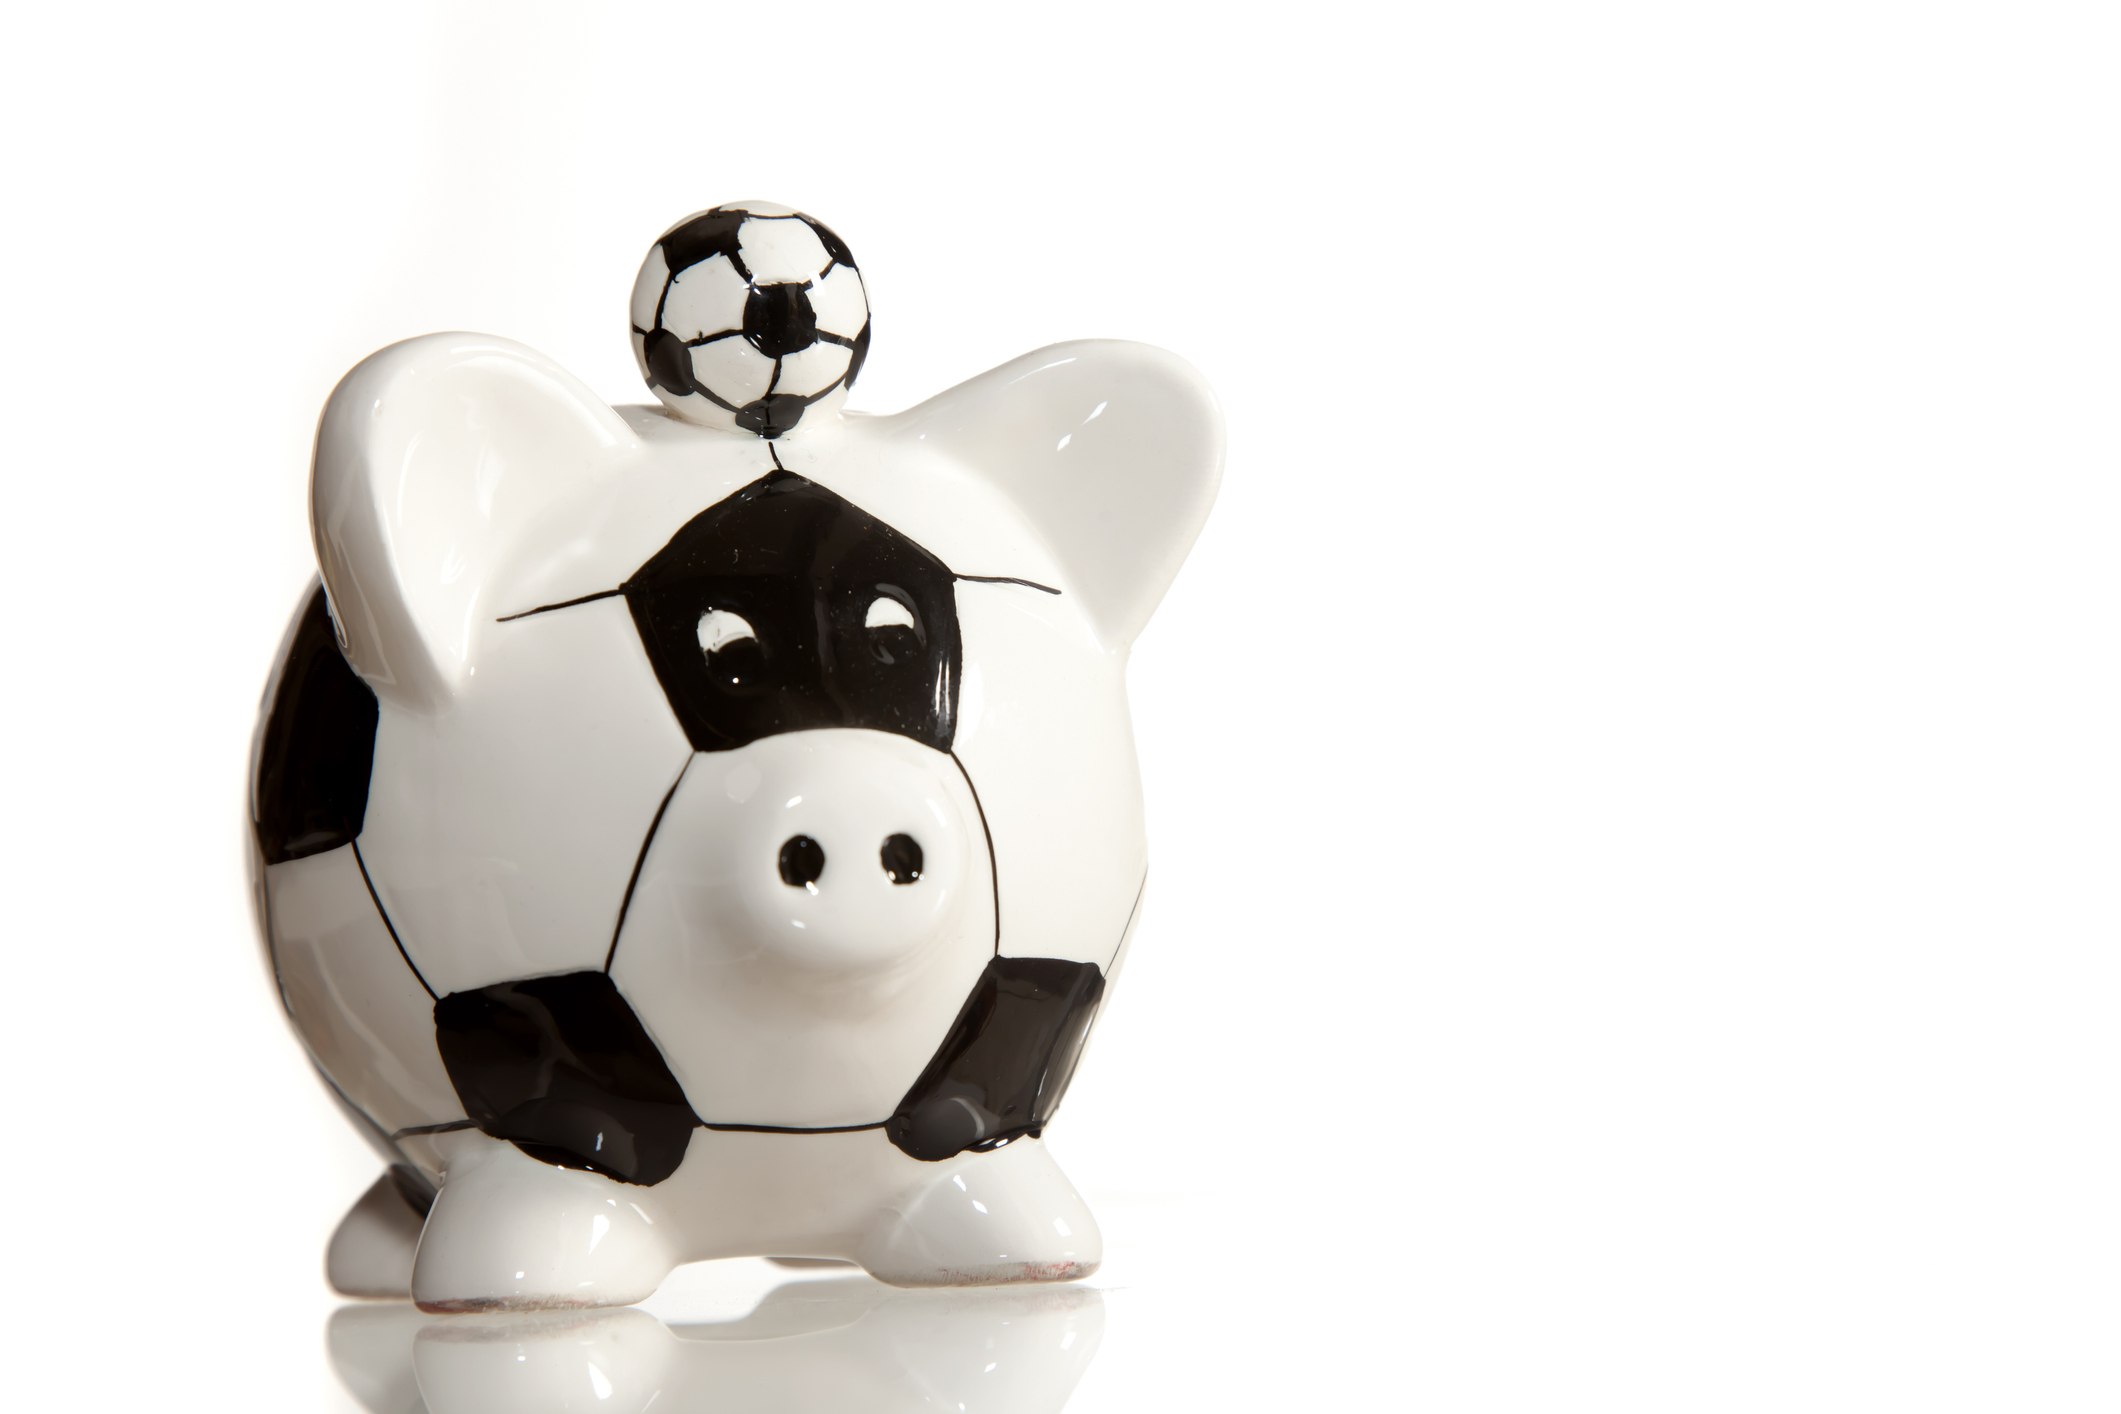 Soccer ball in shape of a piggy bank